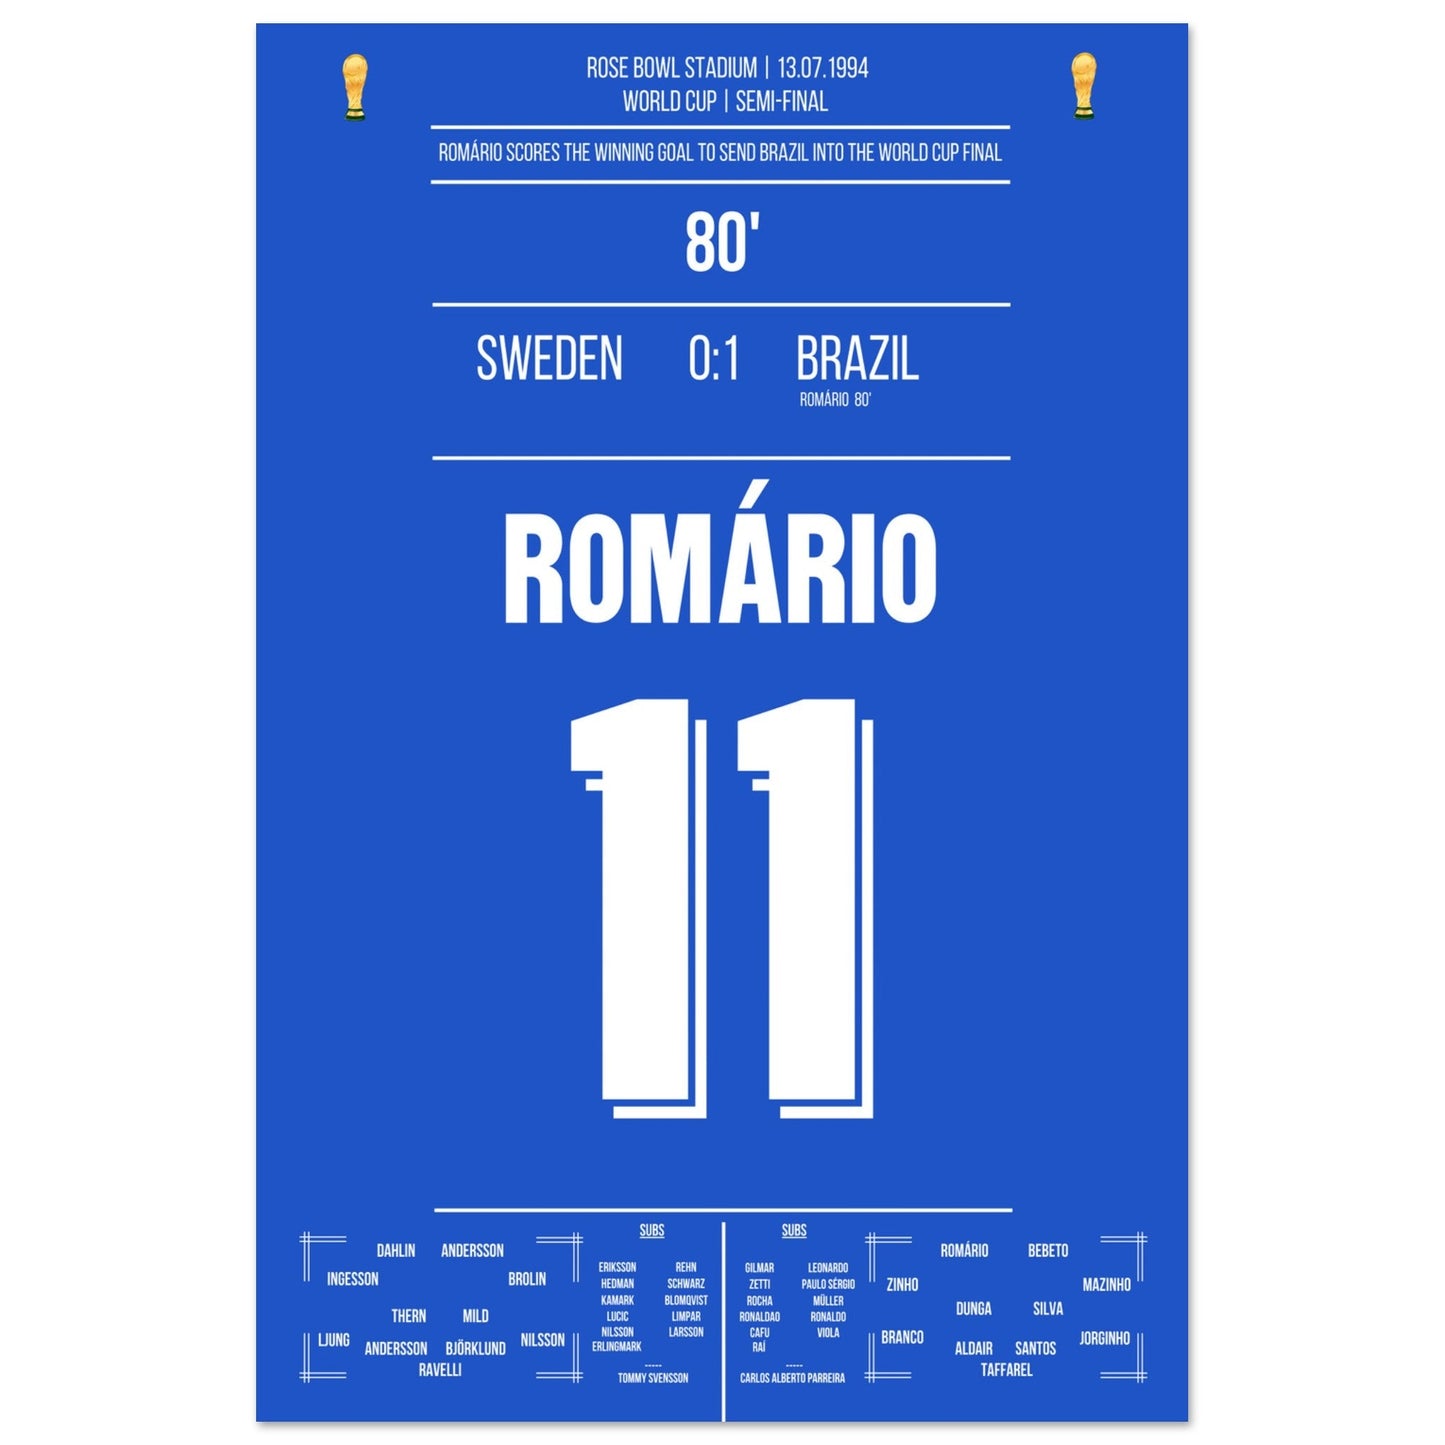 Romario's Siegtreffer im Halbfinale bei der Weltmeisterschaft 1994